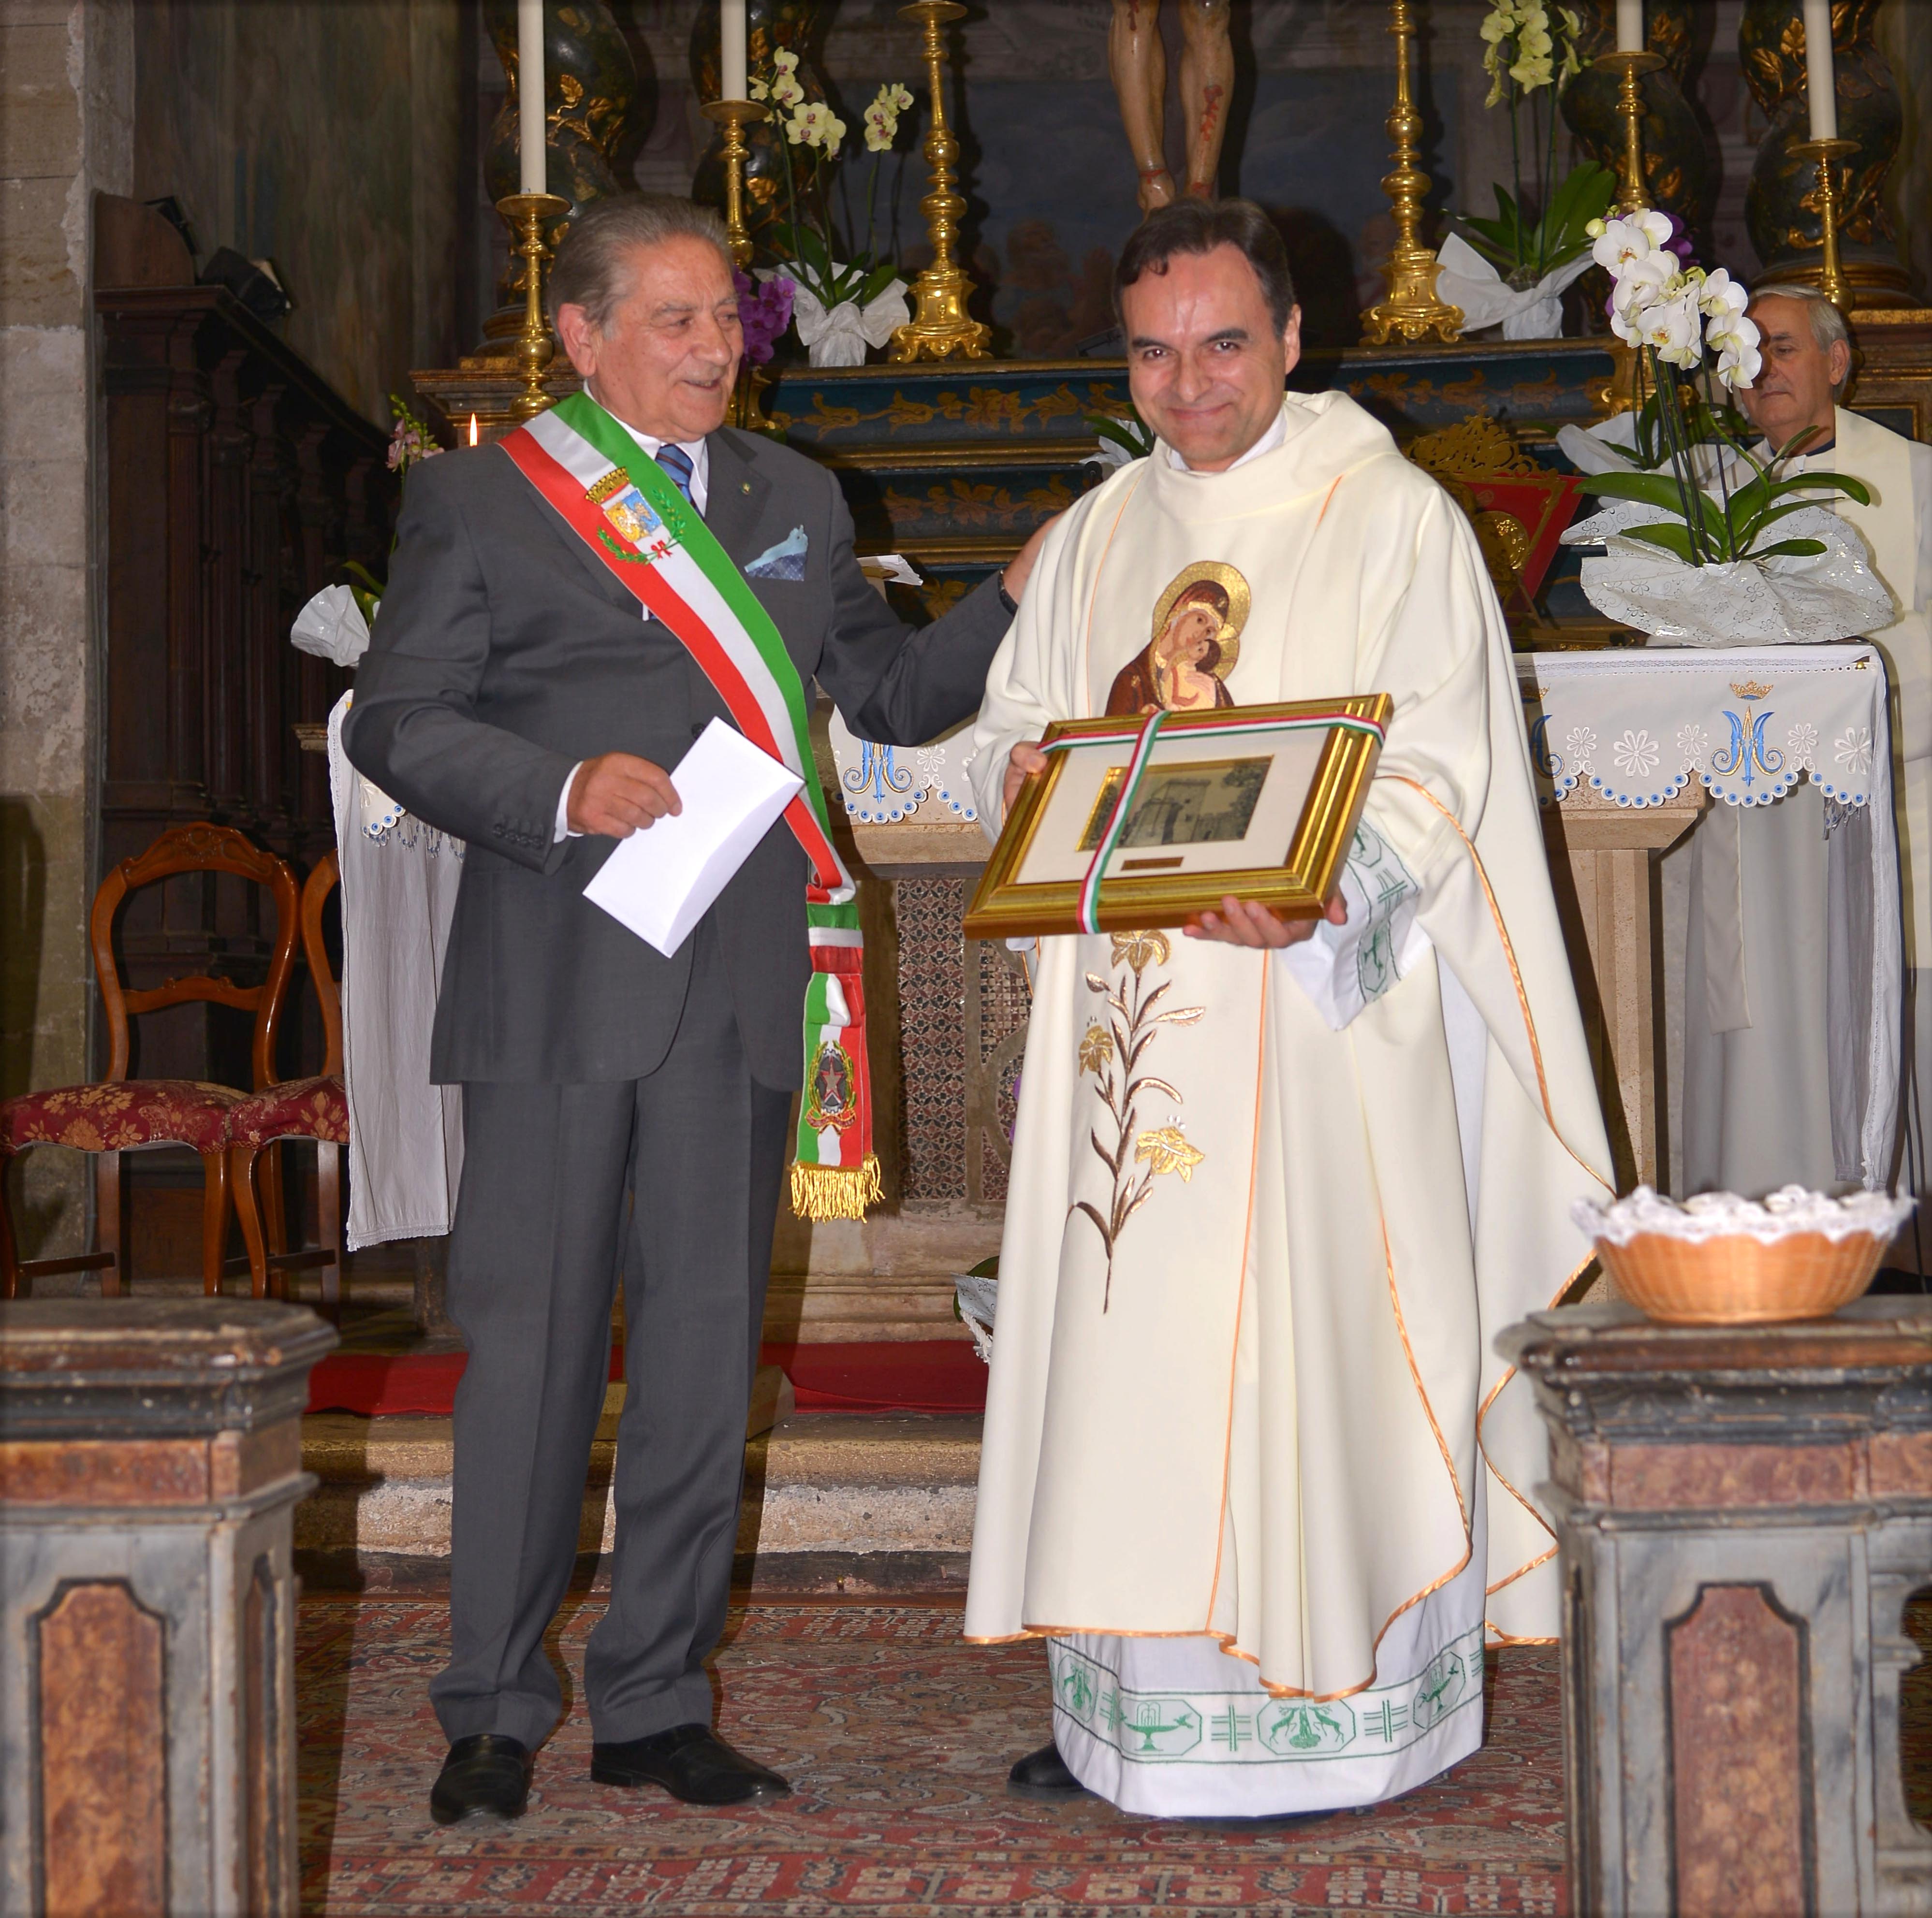 Sermoneta: Don Giuseppe lascia la parrocchia di S. Maria Assunta